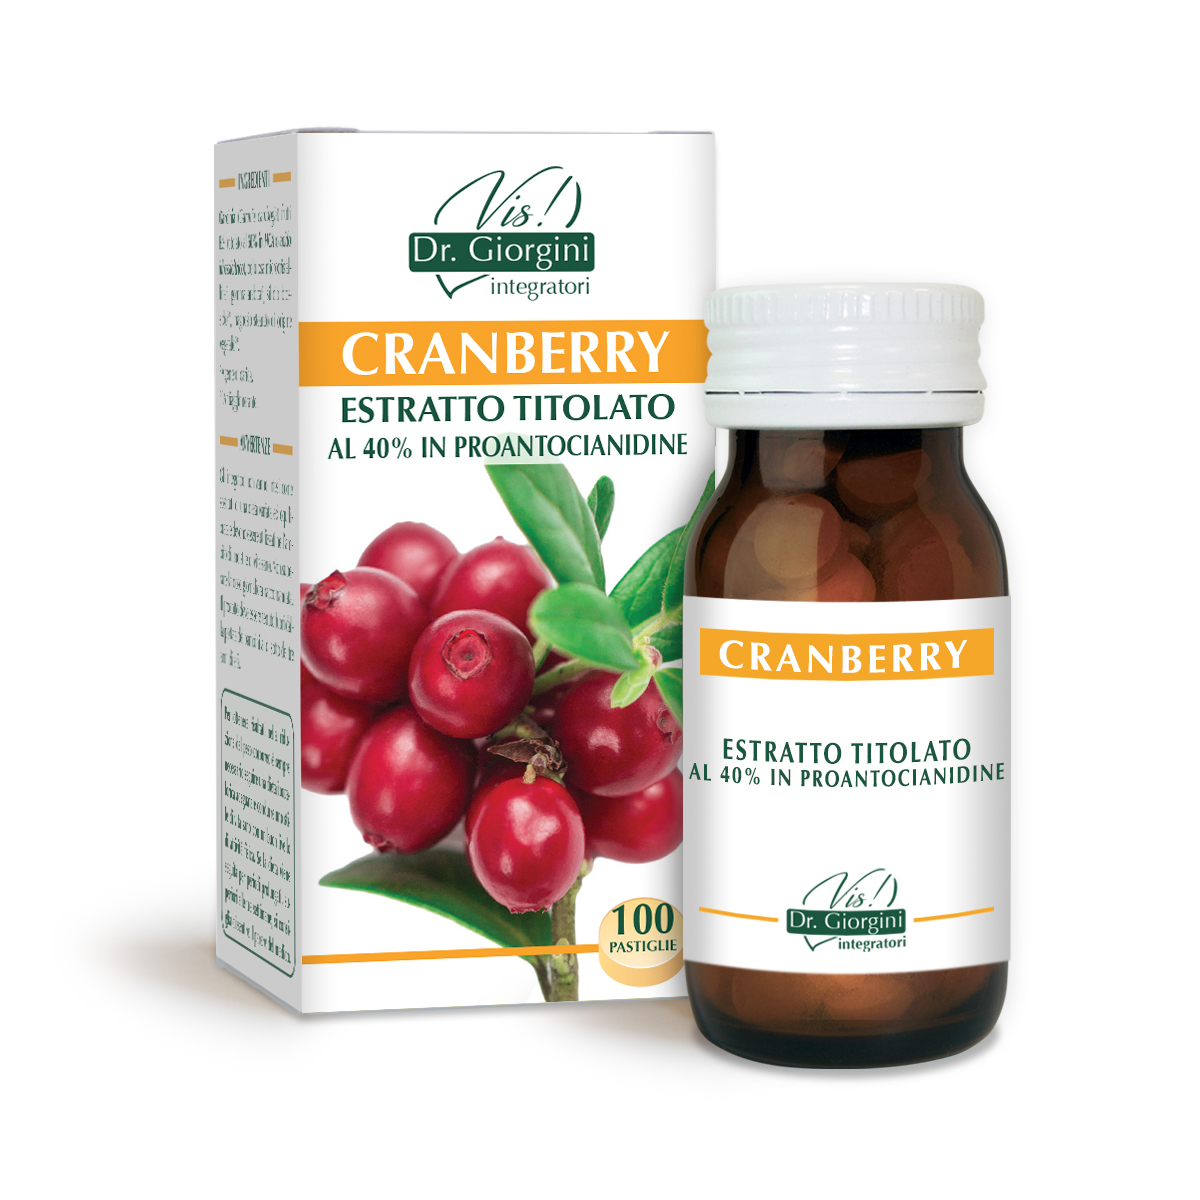 CRANBERRY ESTRATTO TITOLATO 50g- 100 pastiglie da 500 mg